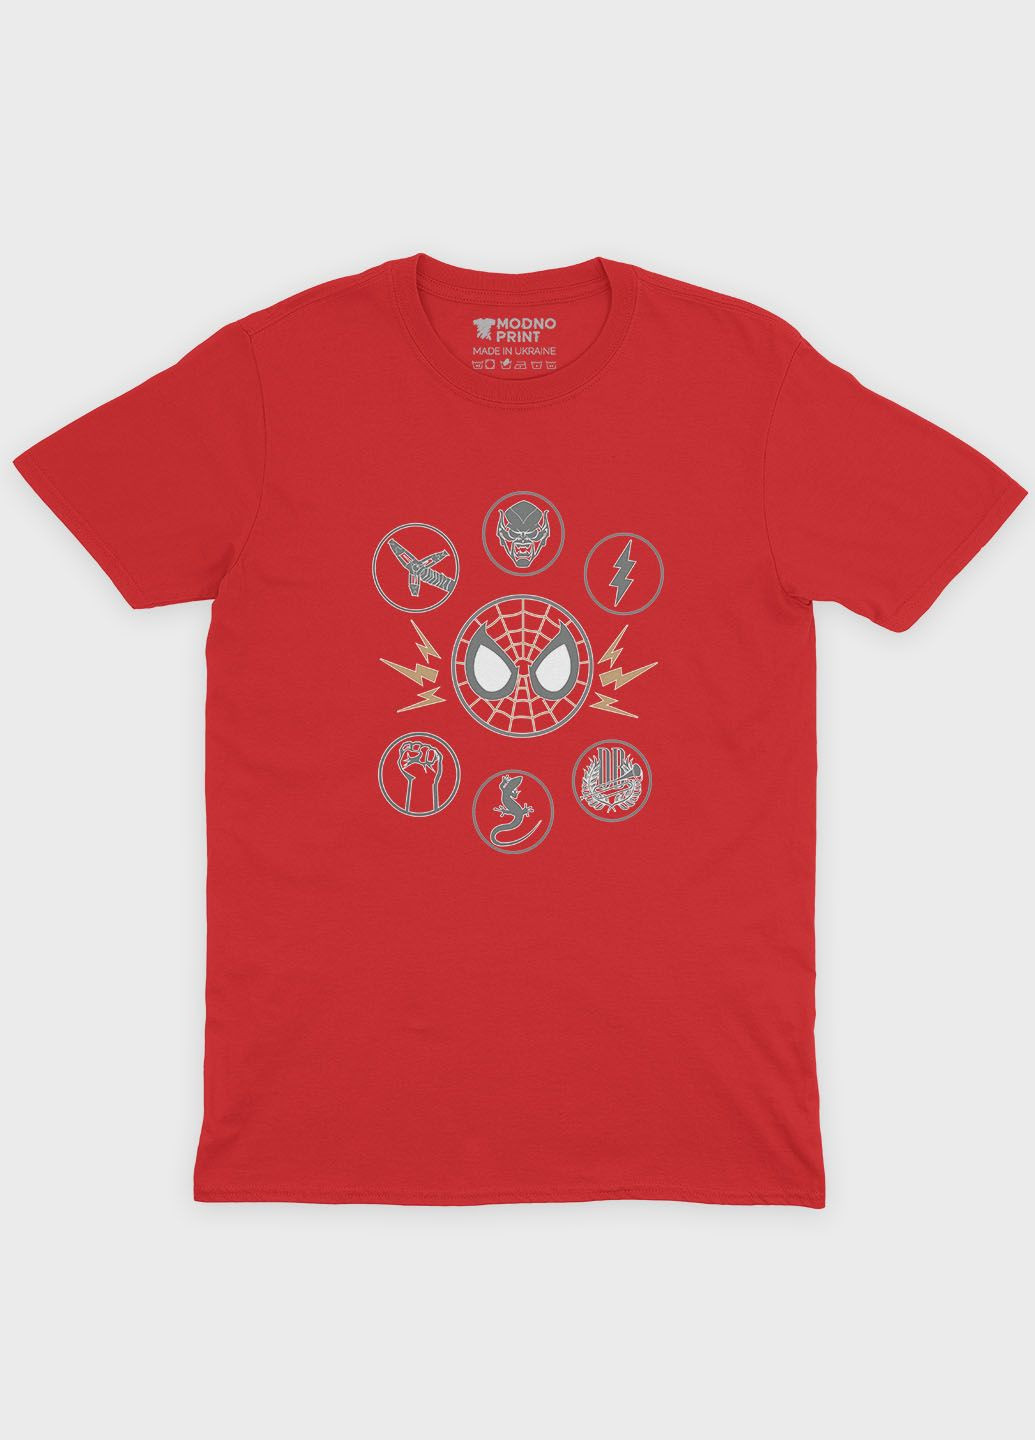 Красная демисезонная футболка для мальчика с принтом супергероя - человек-паук (ts001-1-sre-006-014-012-b) Modno